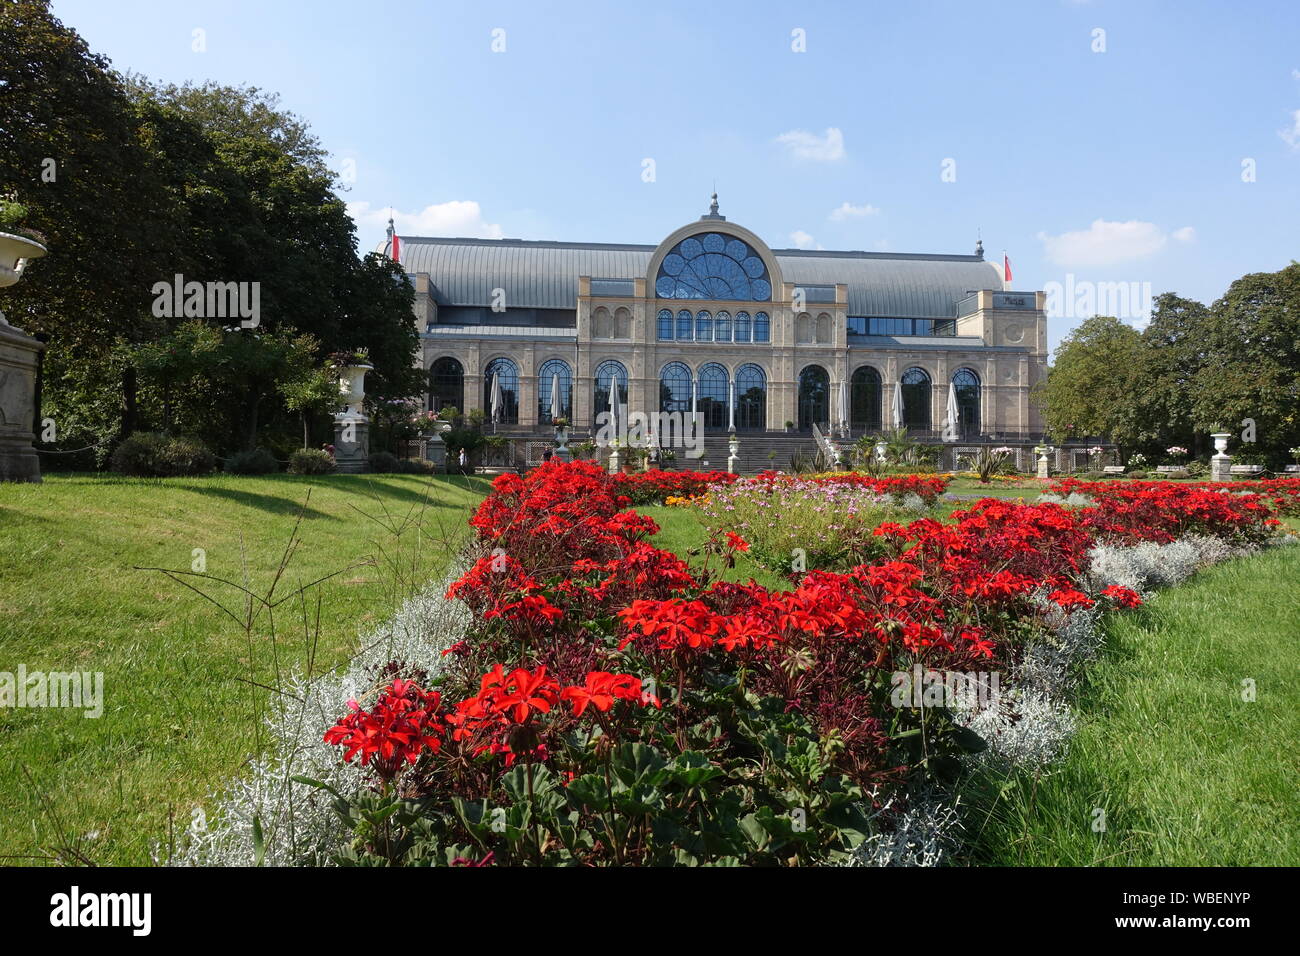 Botanischer Garten - Blumenbeete und Veranstaltungsgebäude, Köln, Nordrhein-Westfalen, Deutschland Stock Photo